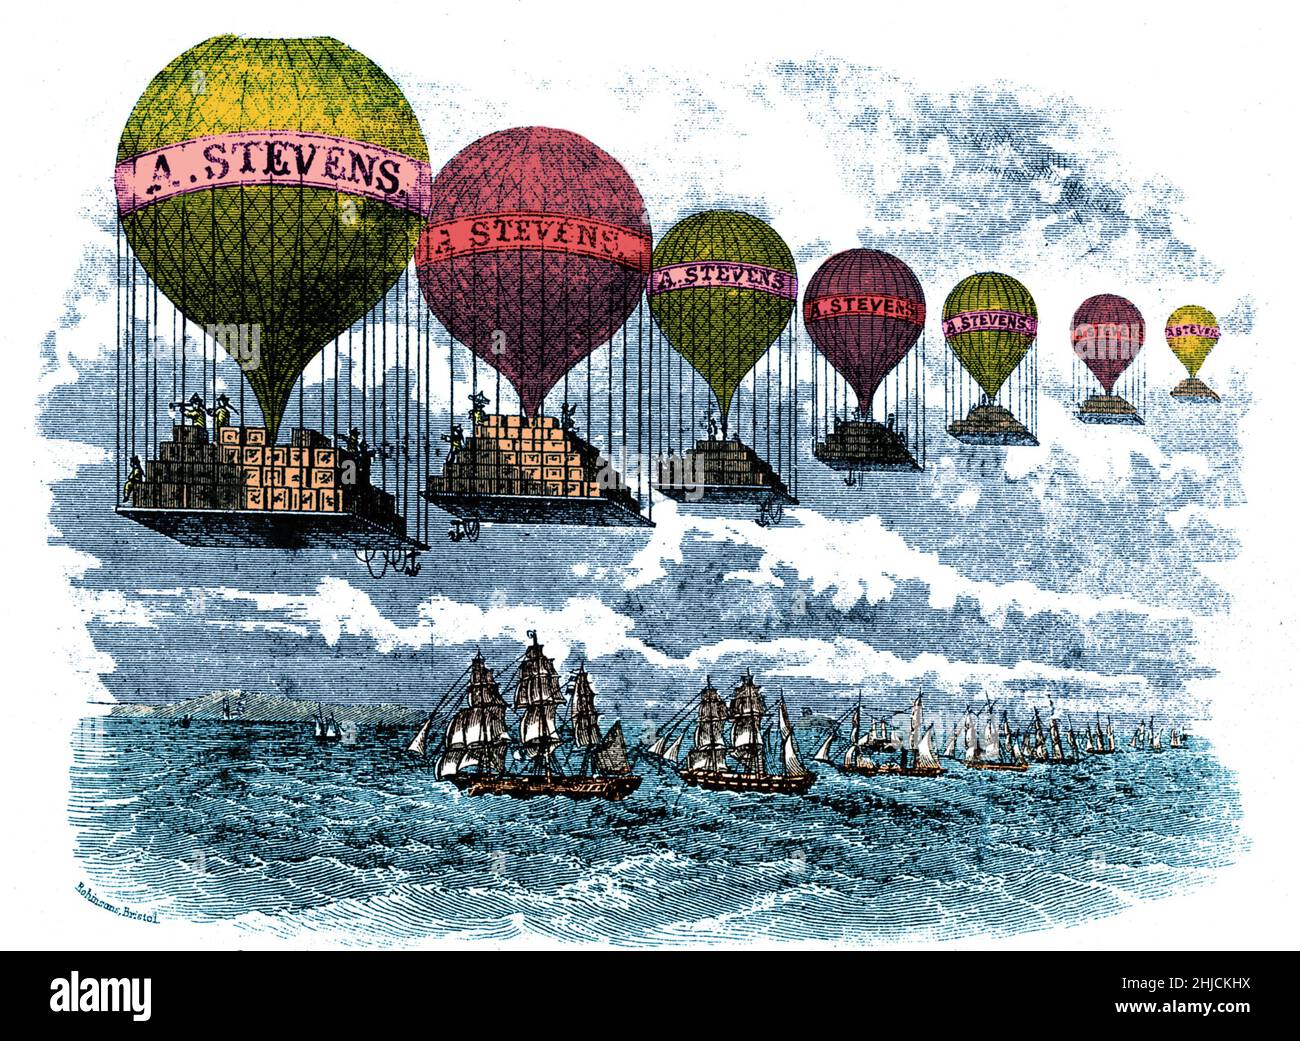 Une gravure en bois de 19th-siècle d'une ligne de ballons à air chaud chargés de boîtes, la publicité 'A.Stevens et voyageant sur une ligne de voiliers.Couleurs améliorées. Banque D'Images